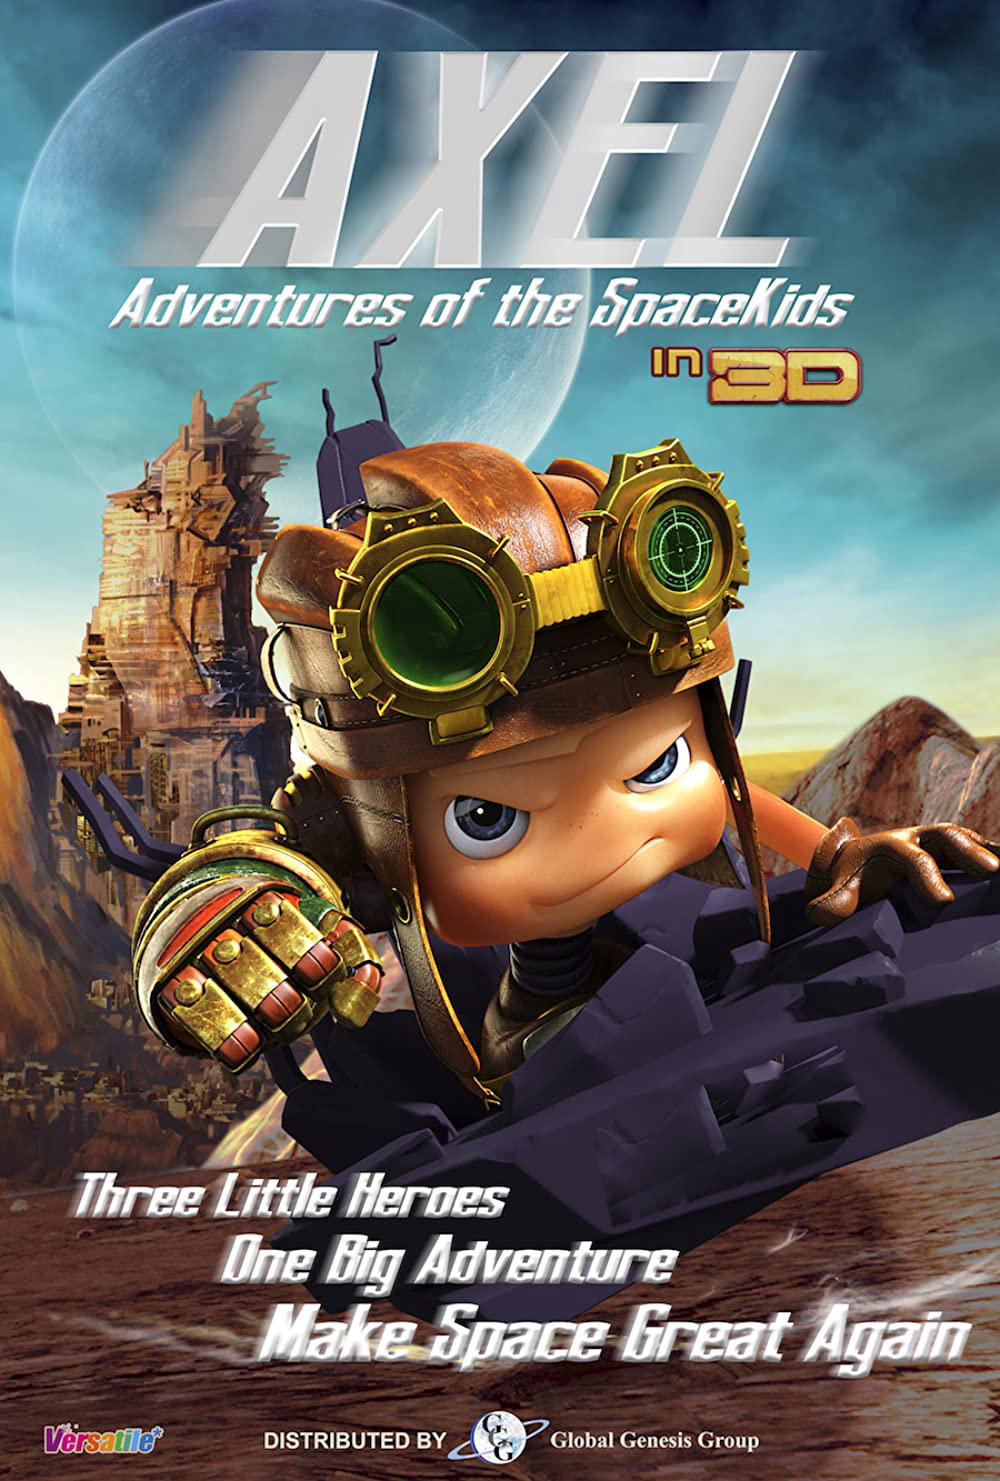 Xem Phim Đội Anh Hùng Nhí (Axel 2: Adventures of the Spacekids)